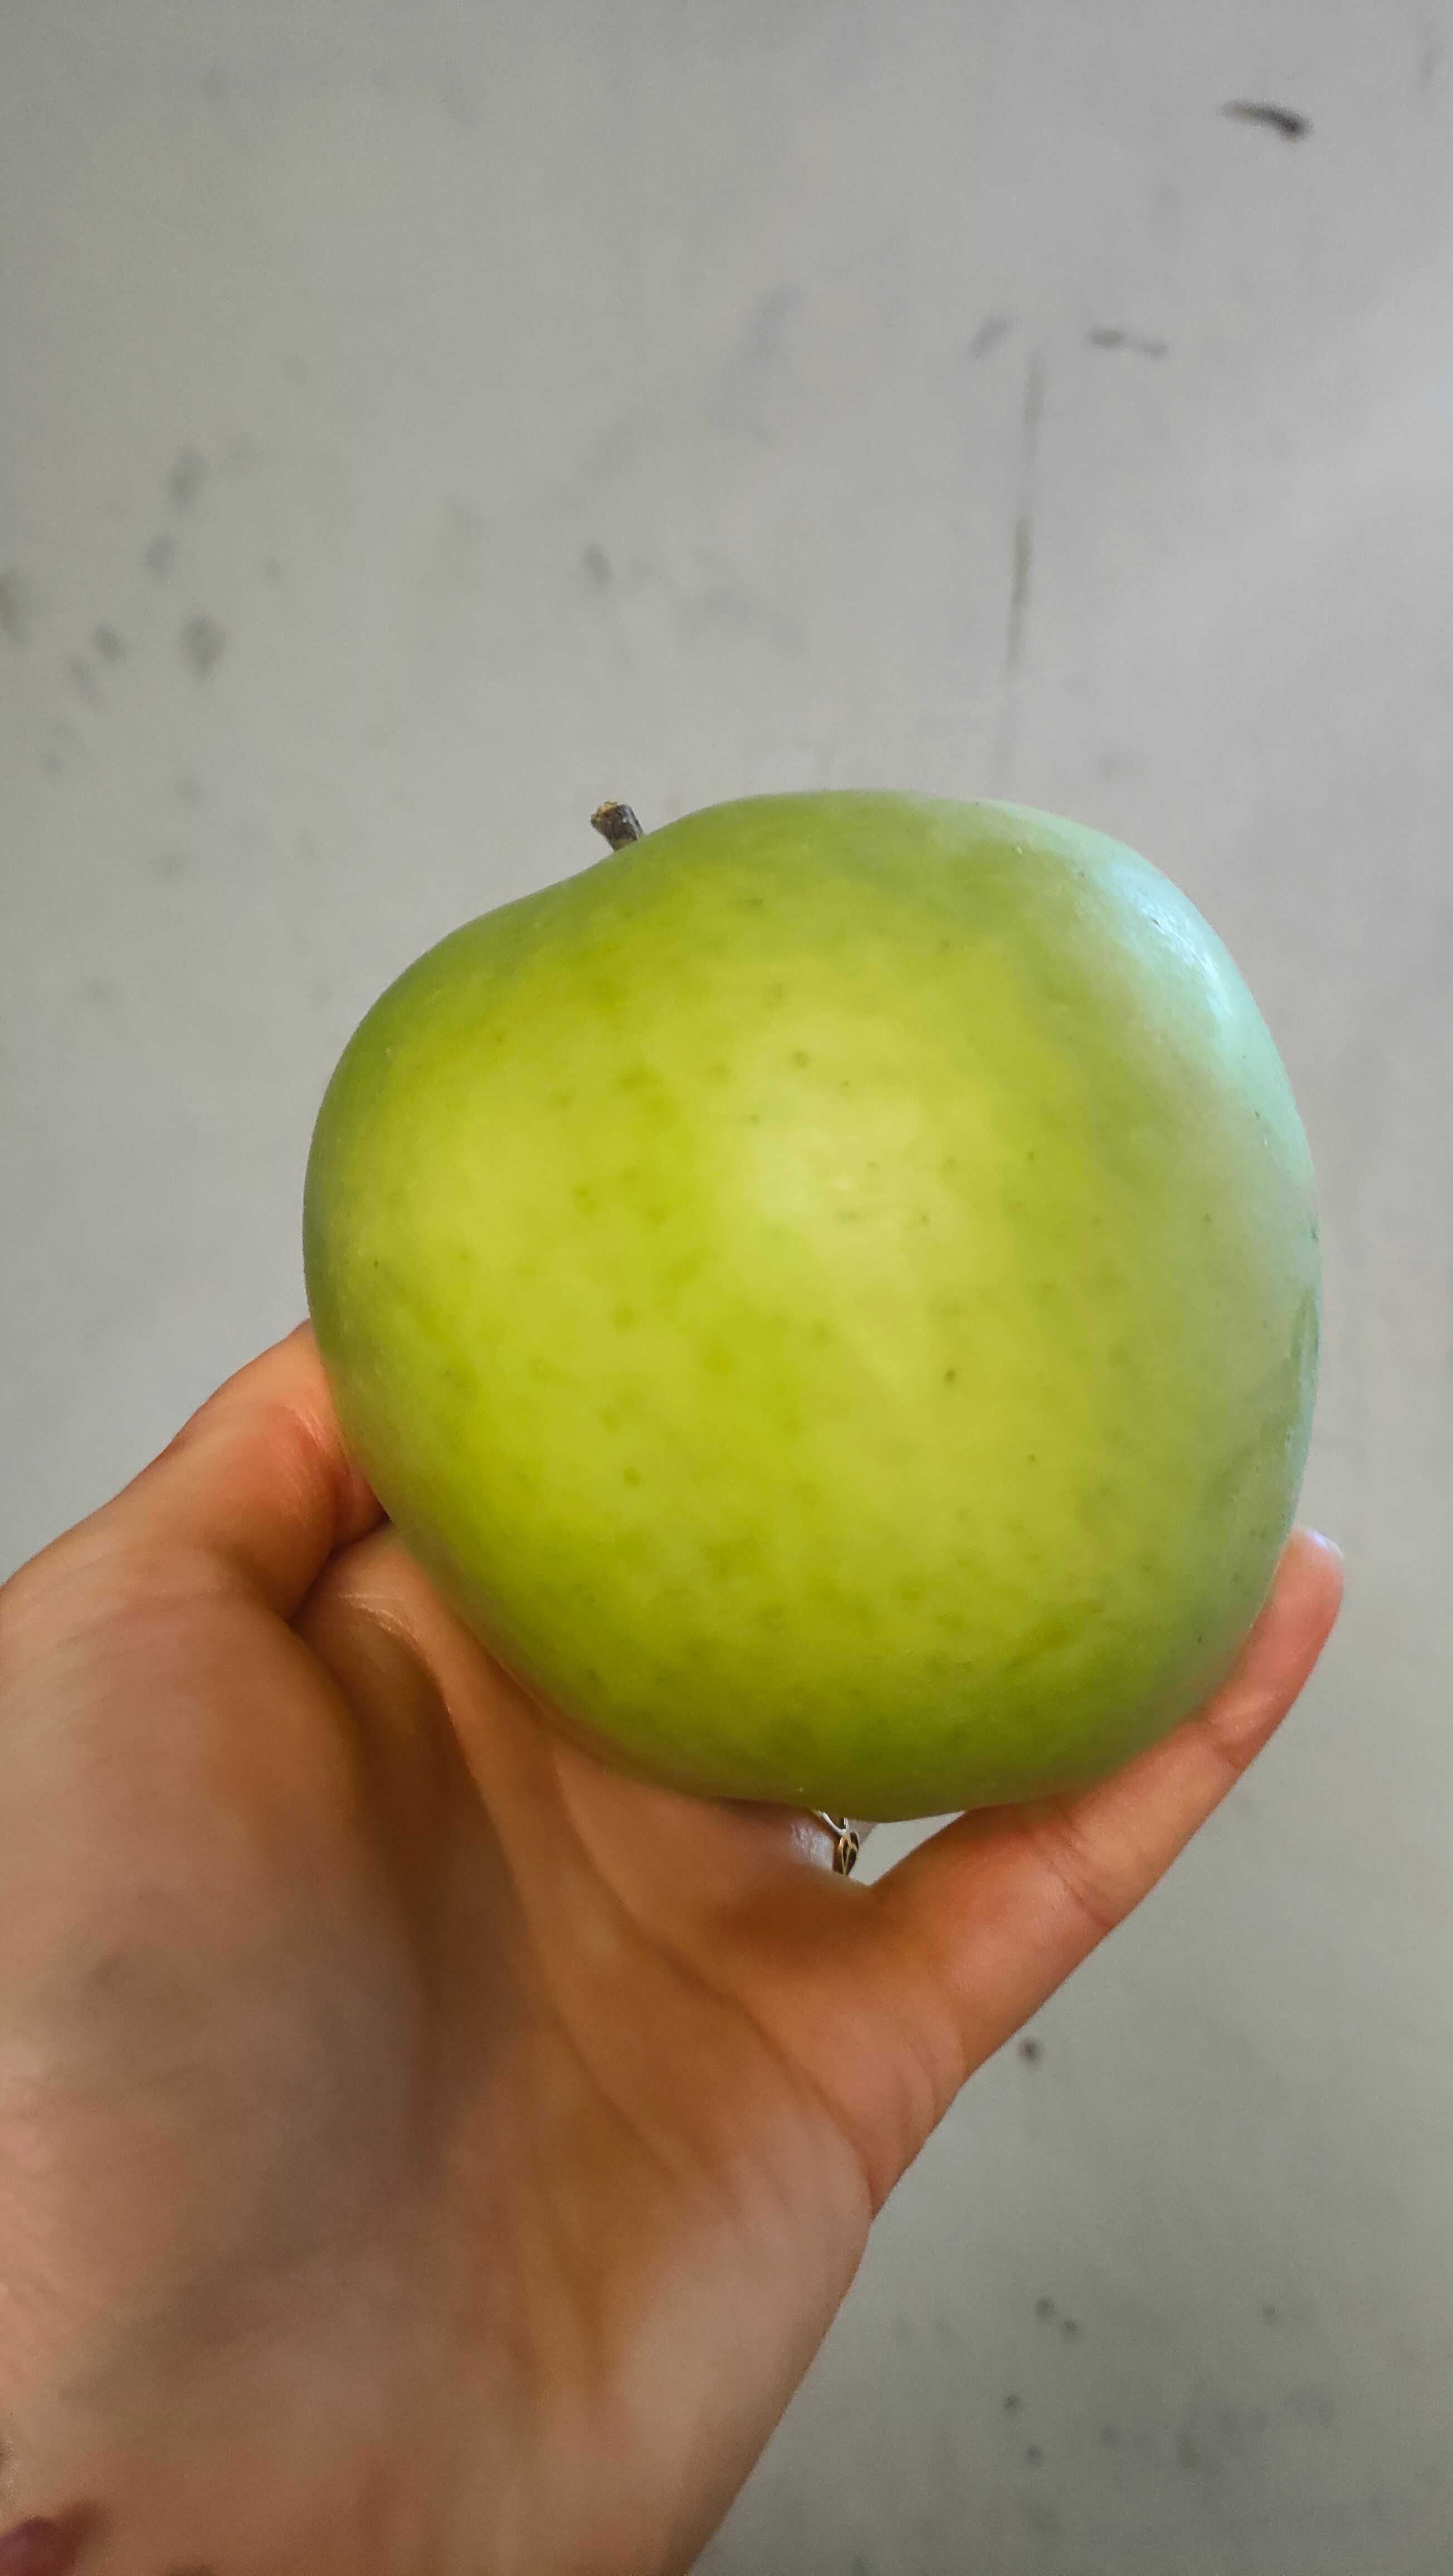 Jabłka różne odmiany 15 kg